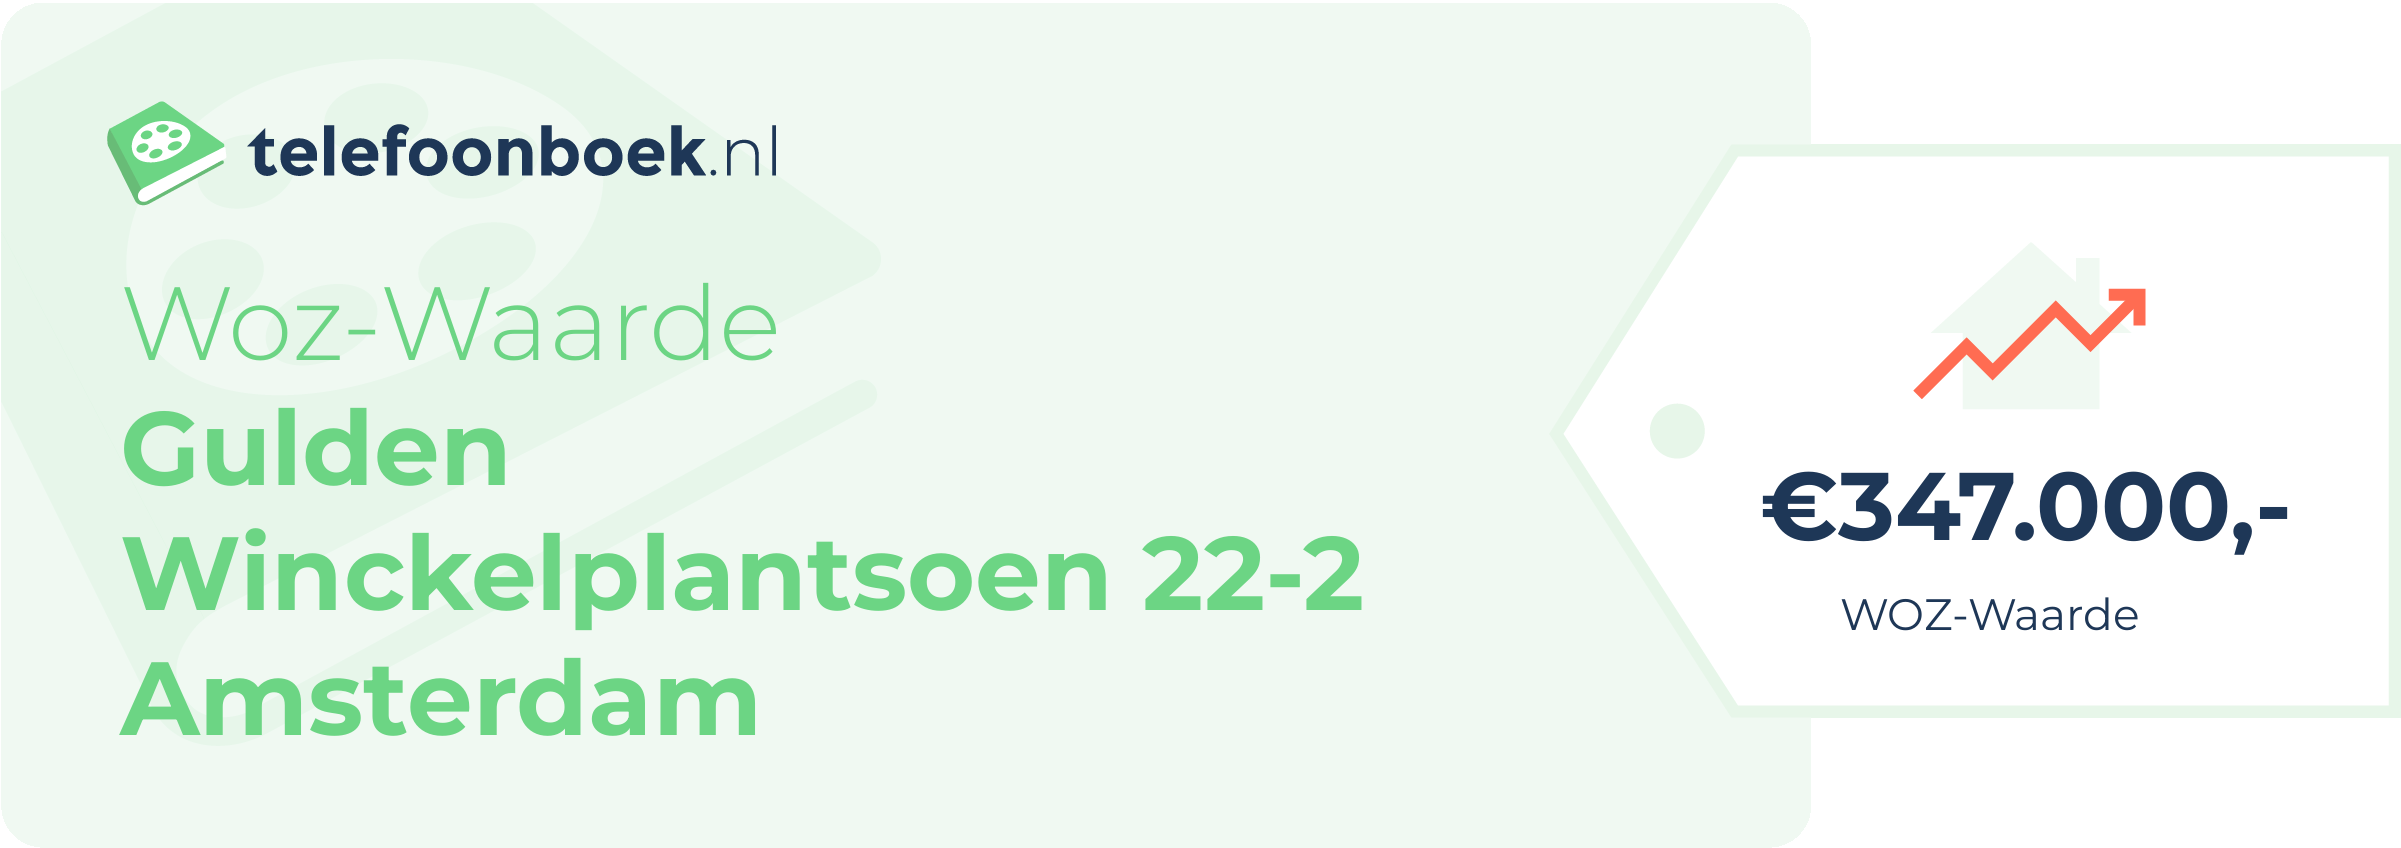 WOZ-waarde Gulden Winckelplantsoen 22-2 Amsterdam